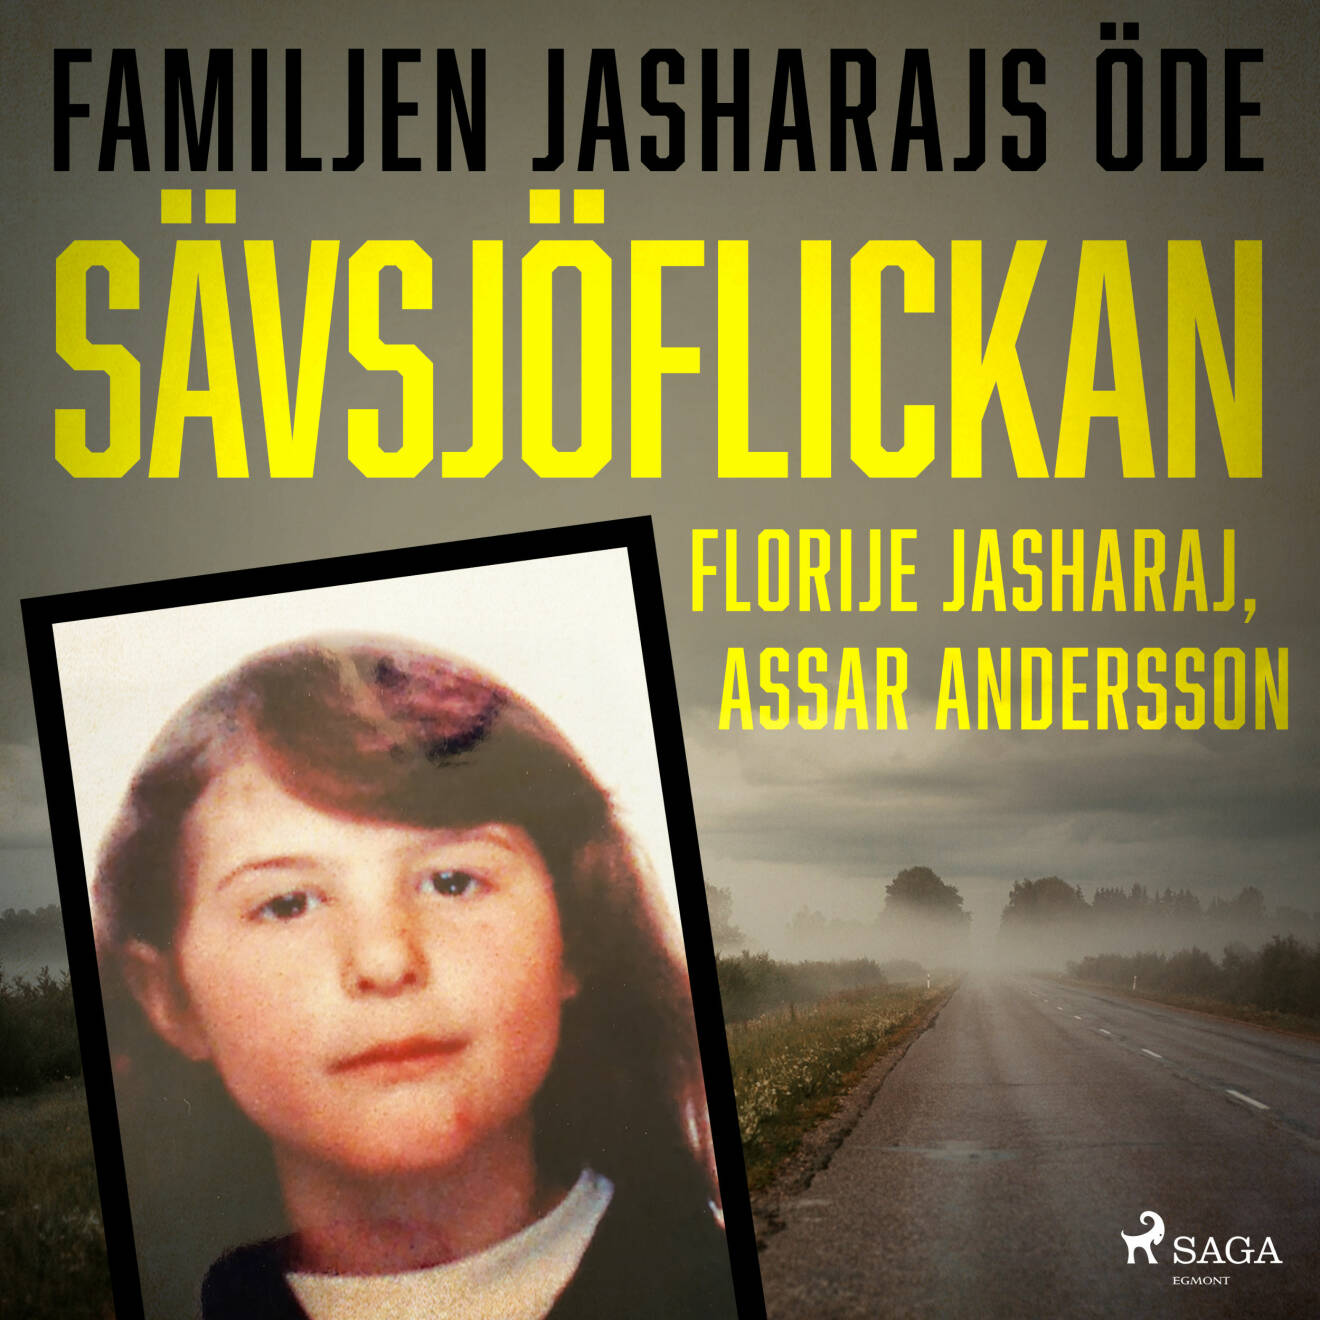 Omslag till boken Sävsjöflickan som mamman Florije Jasharaj och Assar Andersson skrivit.